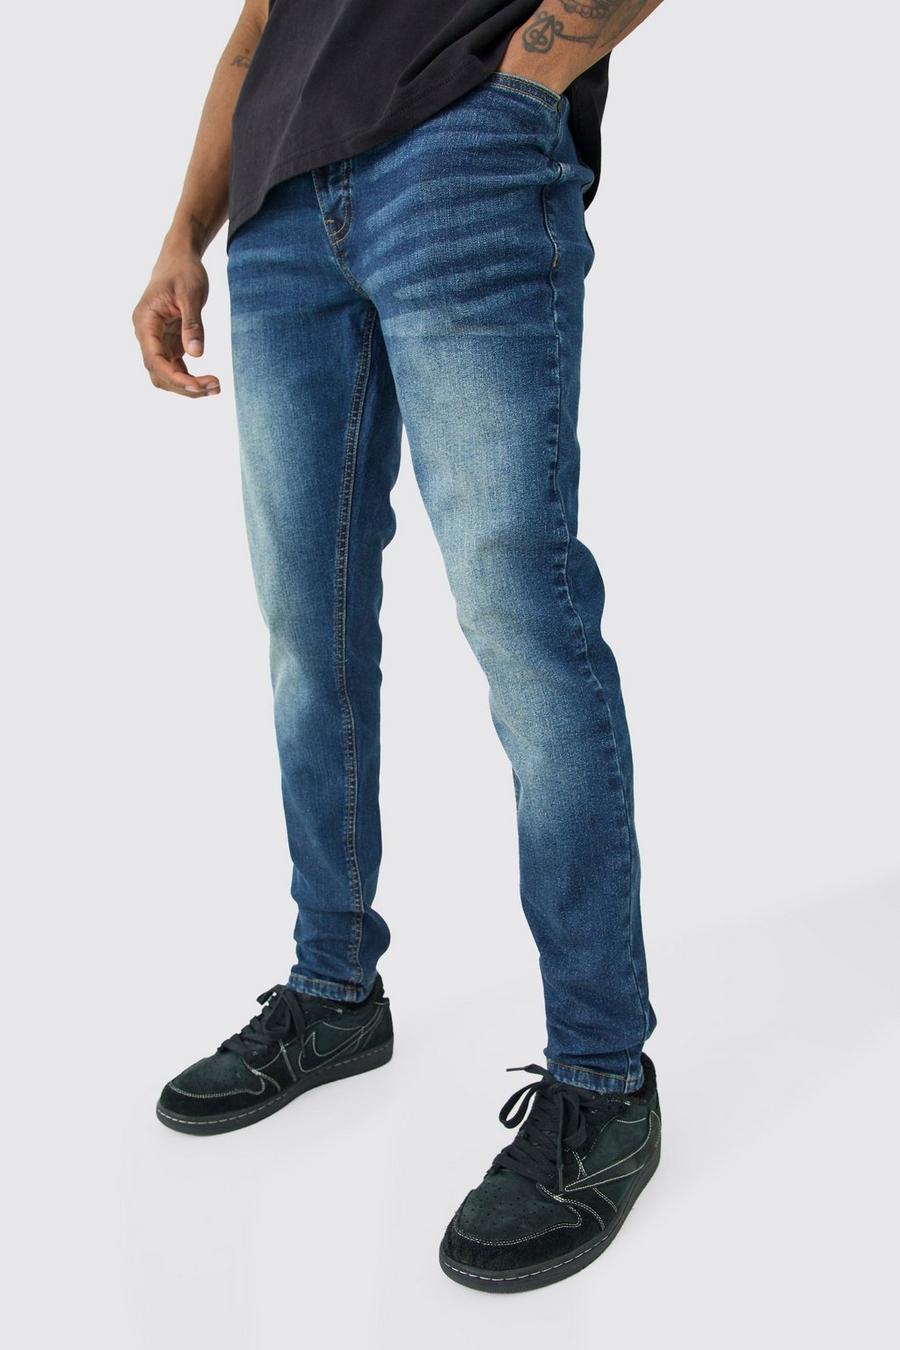 Tall Skinny Stretch Jeans in Antikblau, Antique blue